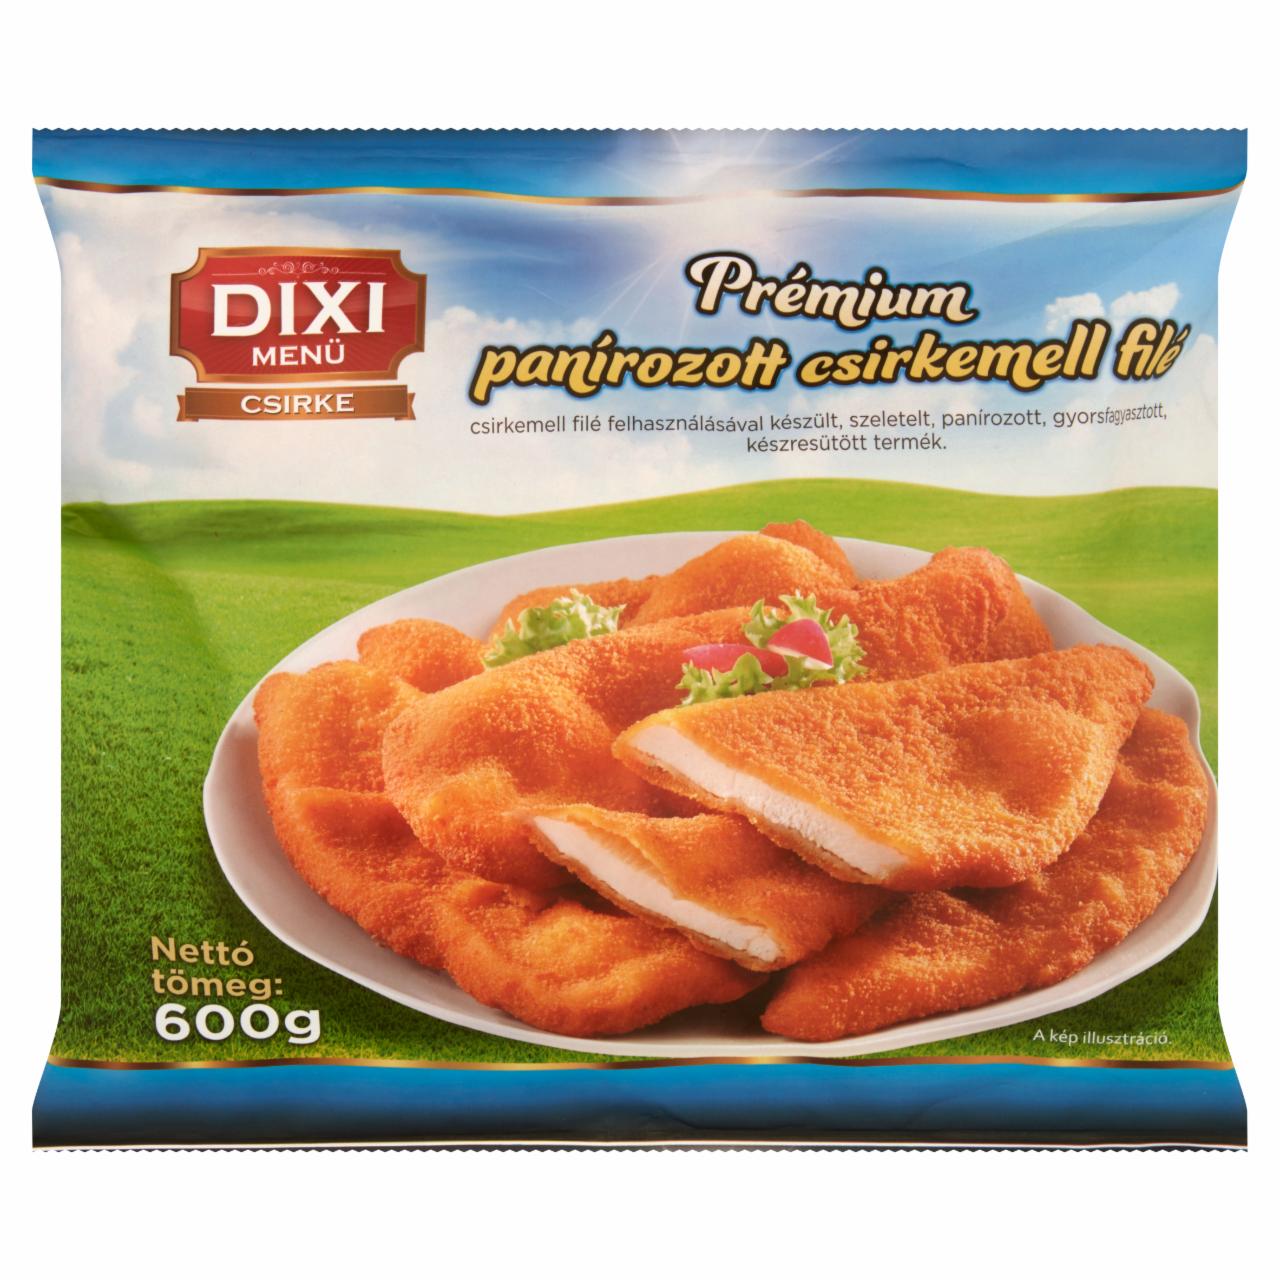 Képek - Dixi Menü Csirke gyorsfagyasztott prémium panírozott csirkemell filé 600 g